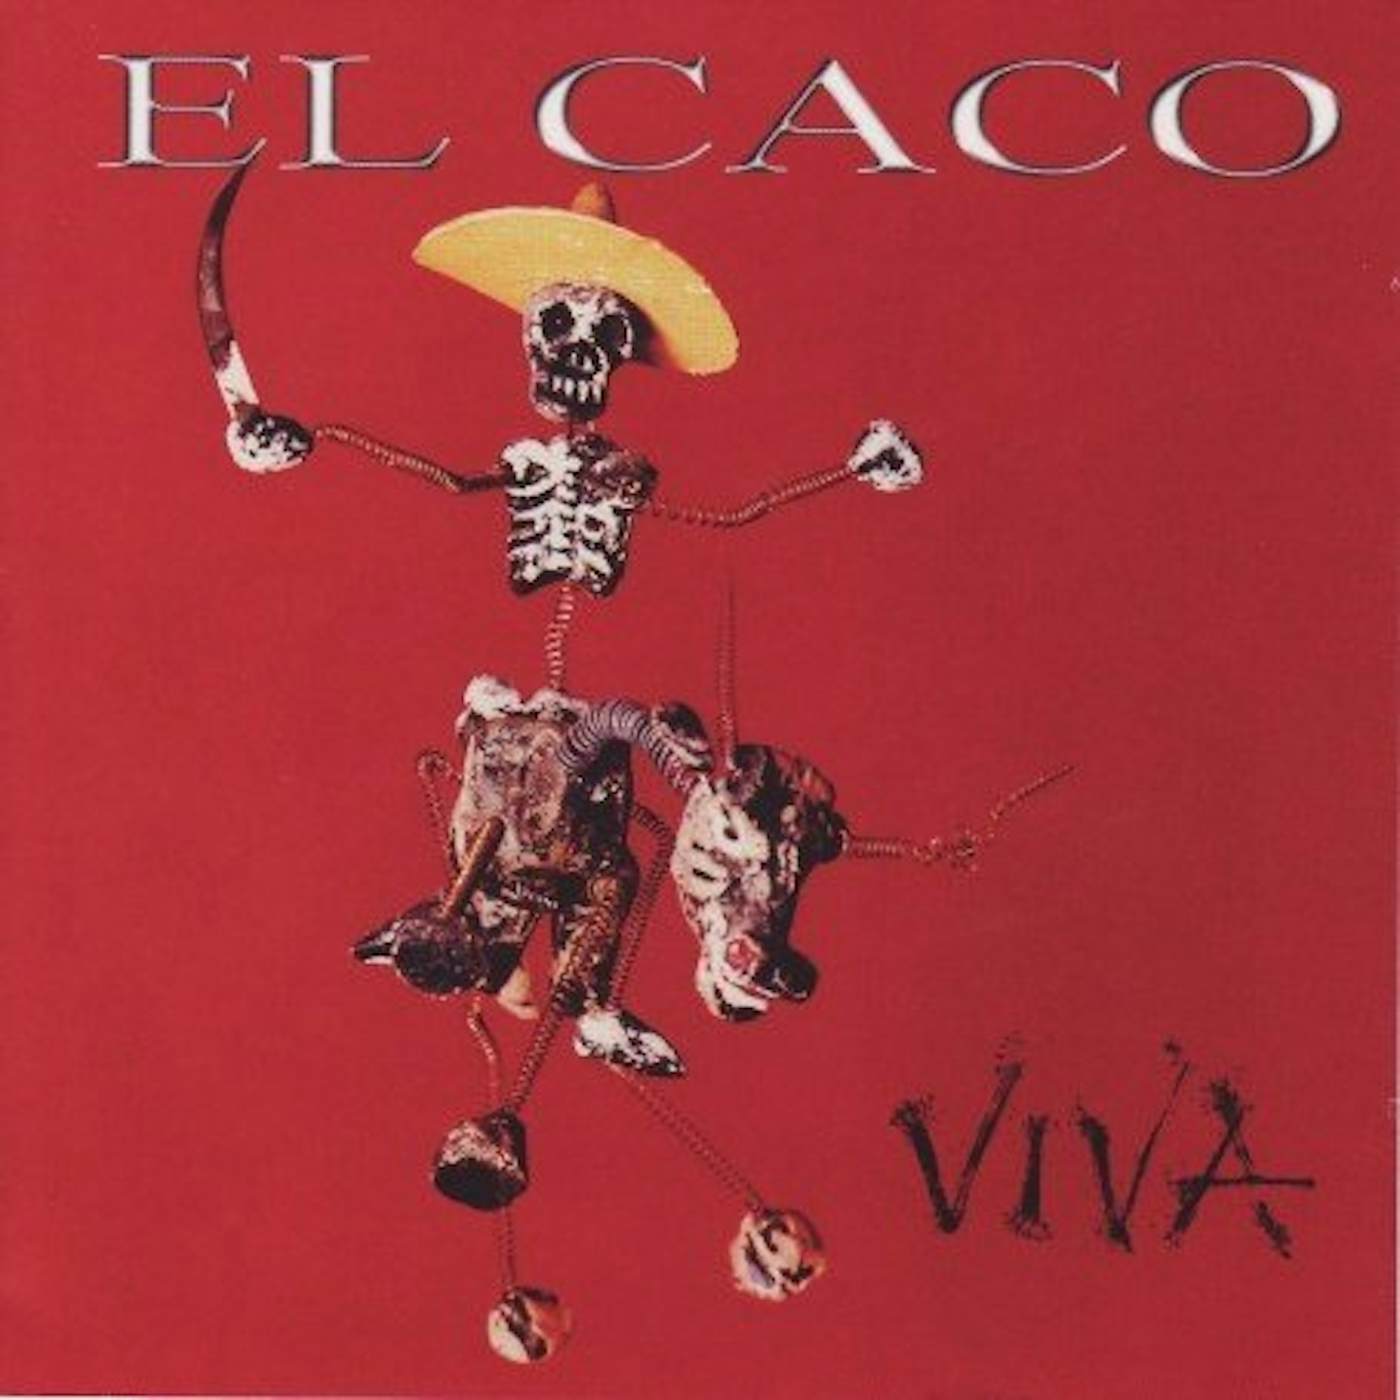 El Caco VIVA CD